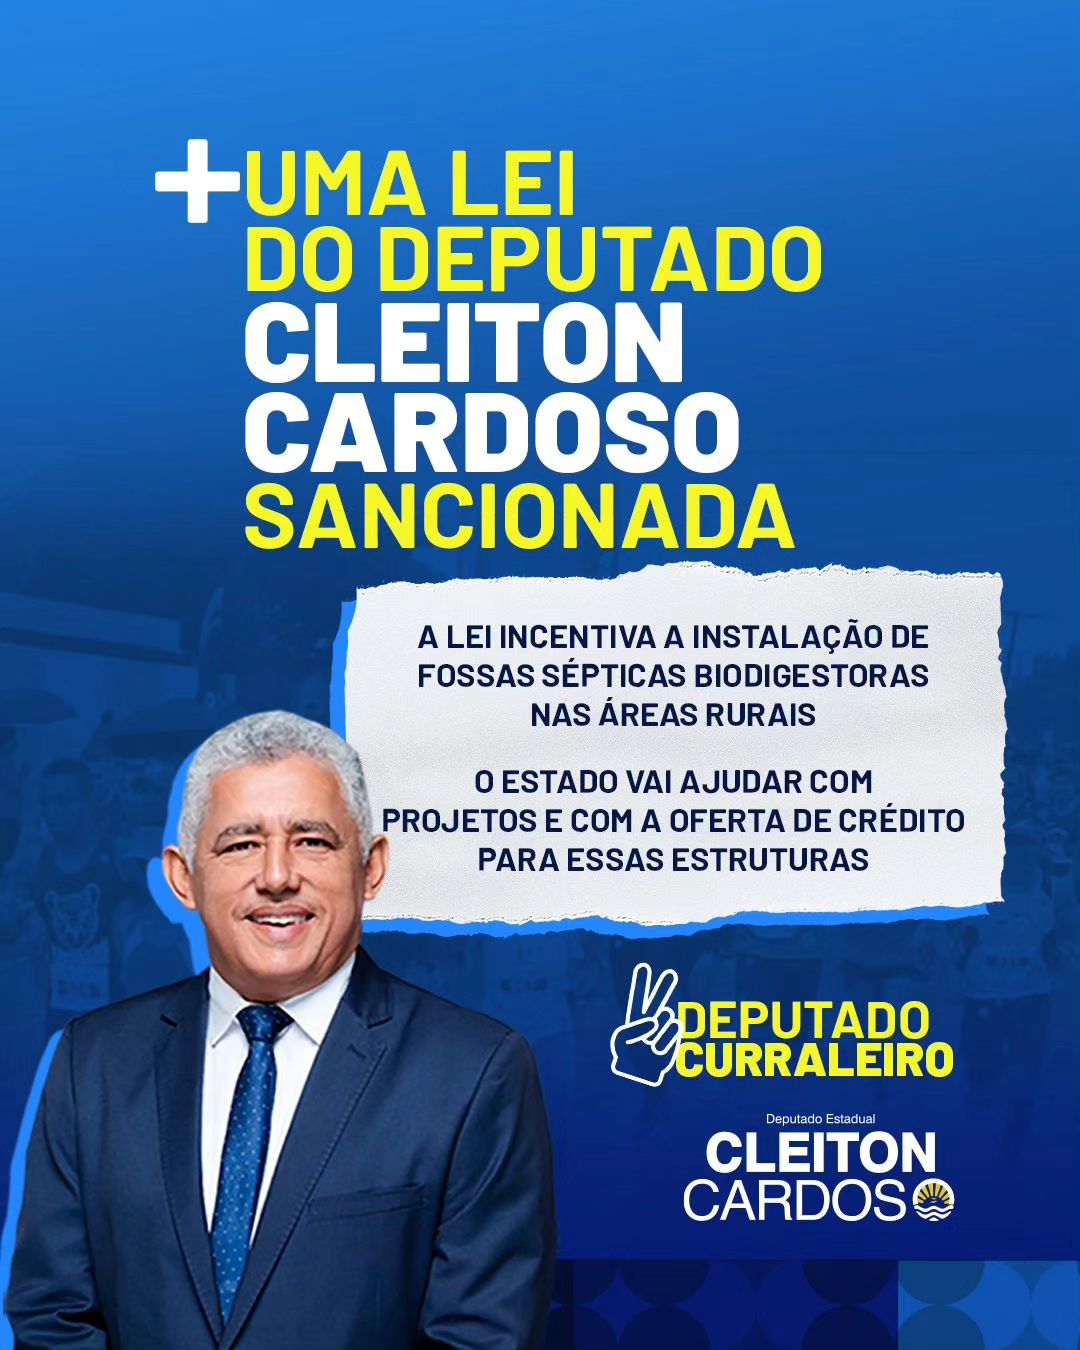 Deputado Cleiton Cardoso comemora sancionamento de Lei para incentivar fossas sépticas biodigestoras em áreas rurais do Tocantins